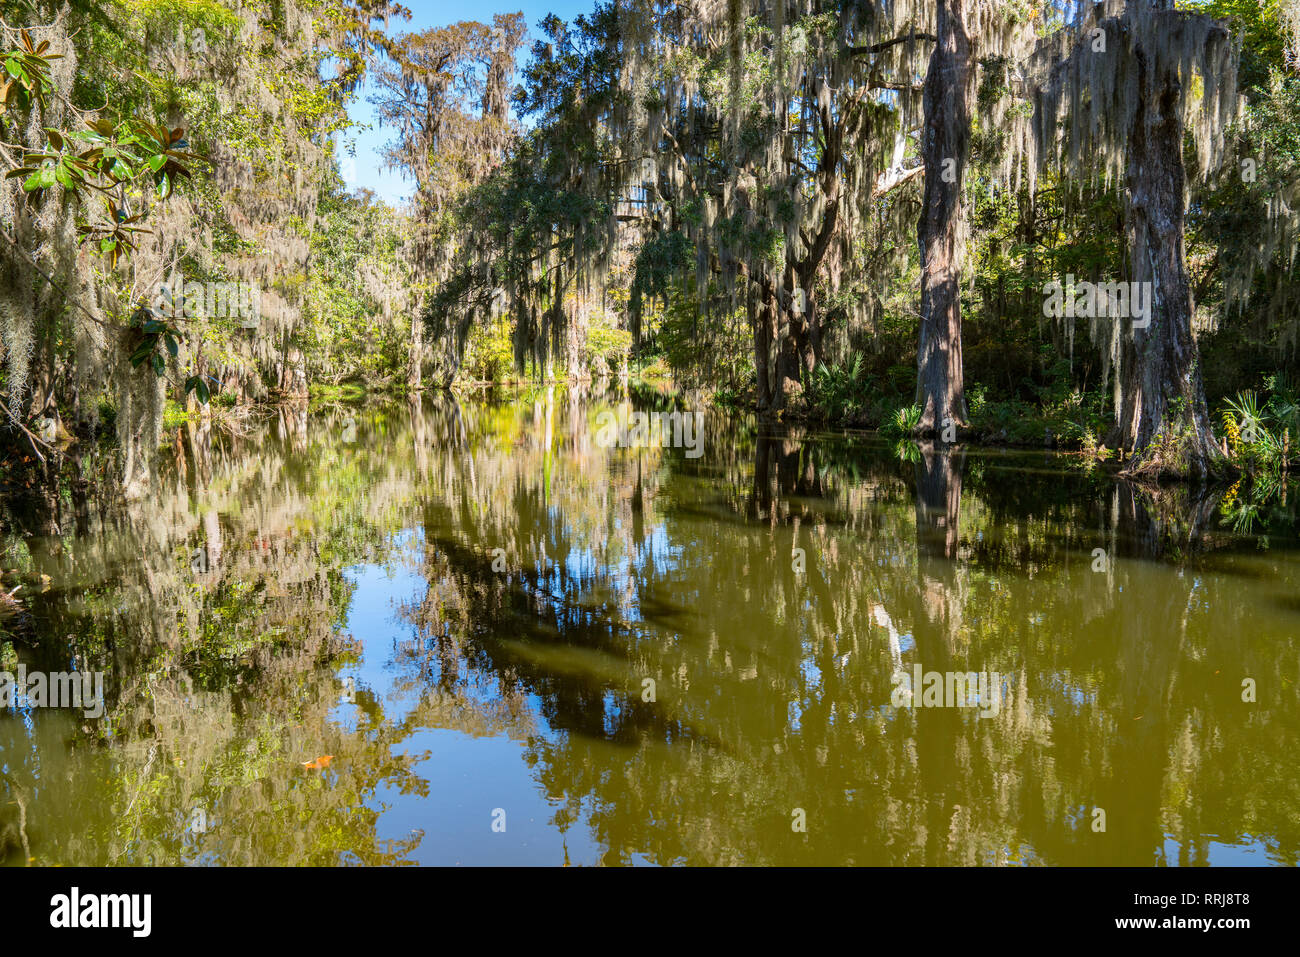 Cypress swamp avec mousse espagnole dans la Caroline du Sud Pays Bas Banque D'Images